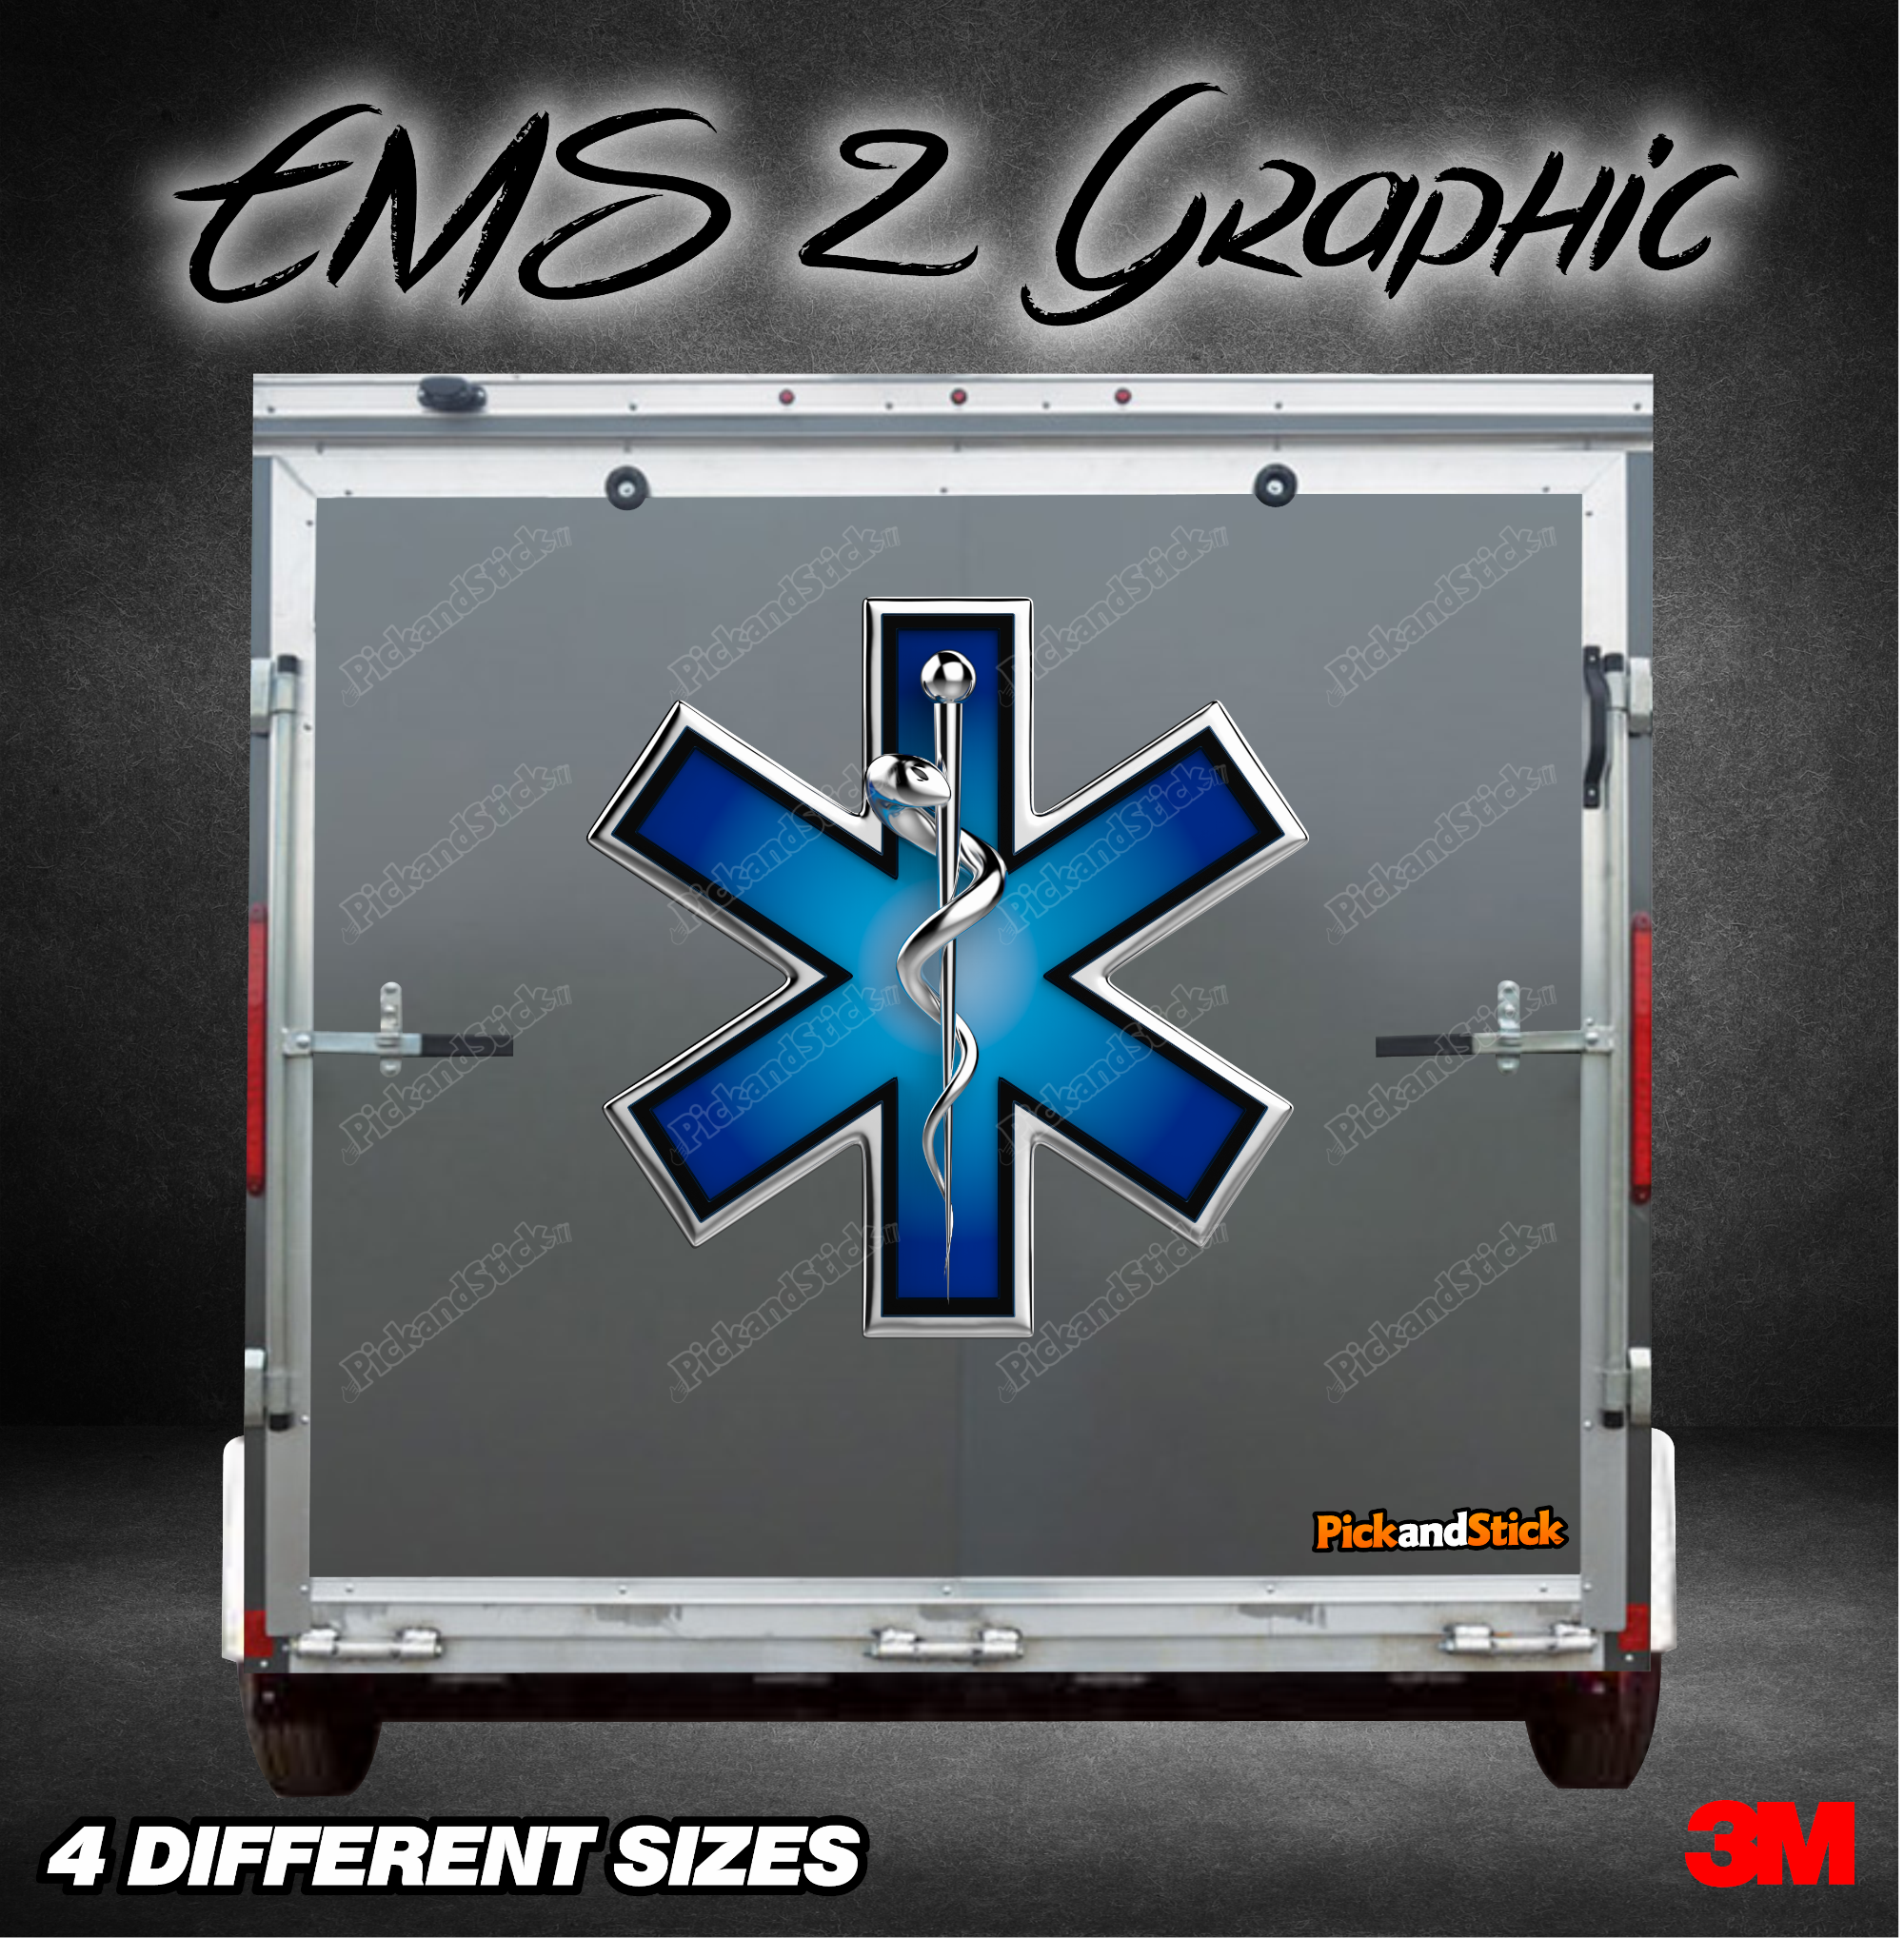 EMS 2 Trailer Graphic - PickandStickcom